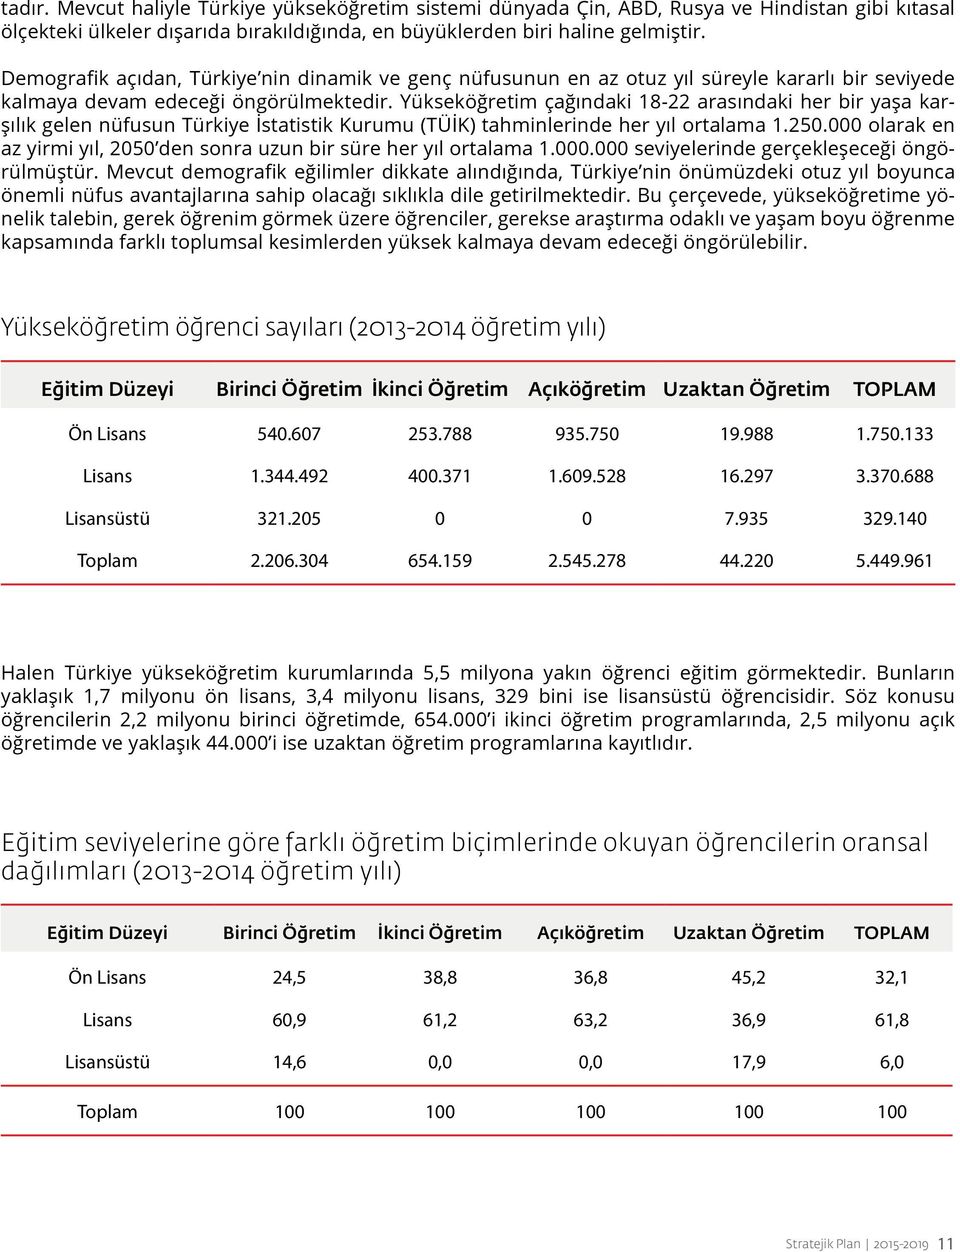 Yükseköğretim çağındaki 18-22 arasındaki her bir yaşa karşılık gelen nüfusun Türkiye İstatistik Kurumu (TÜİK) tahminlerinde her yıl ortalama 1.250.